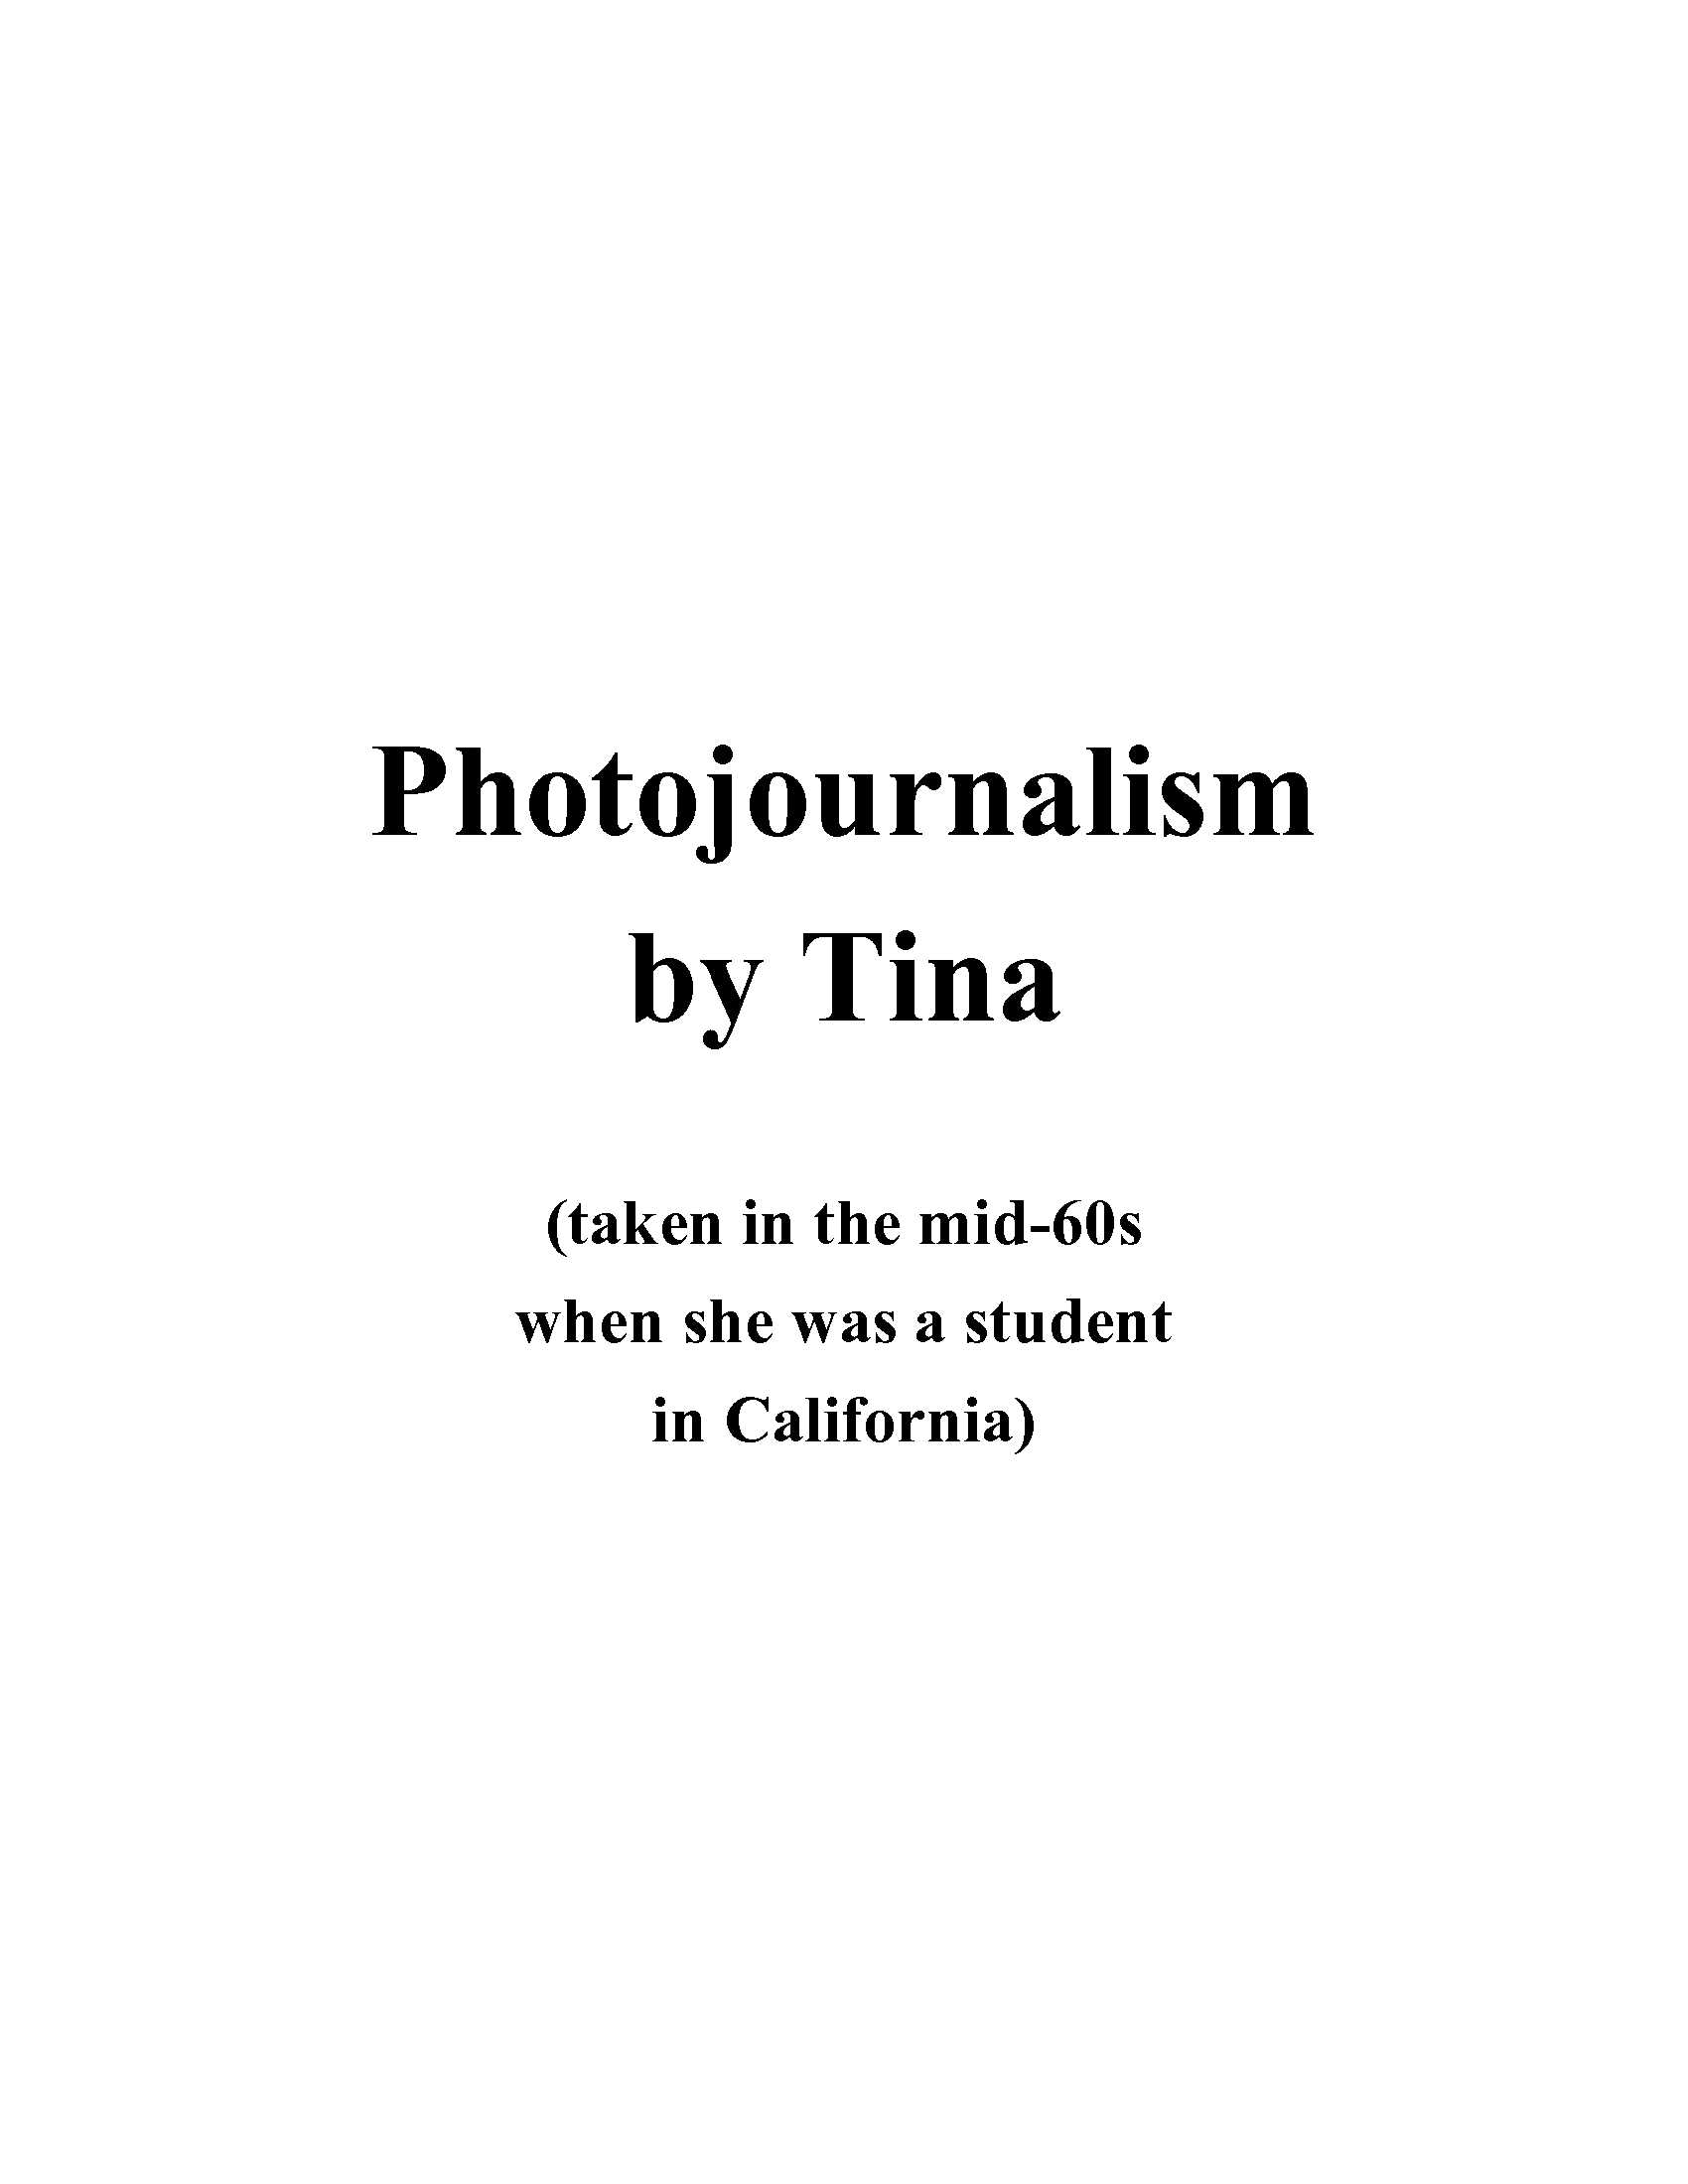 Tina Photos Divider